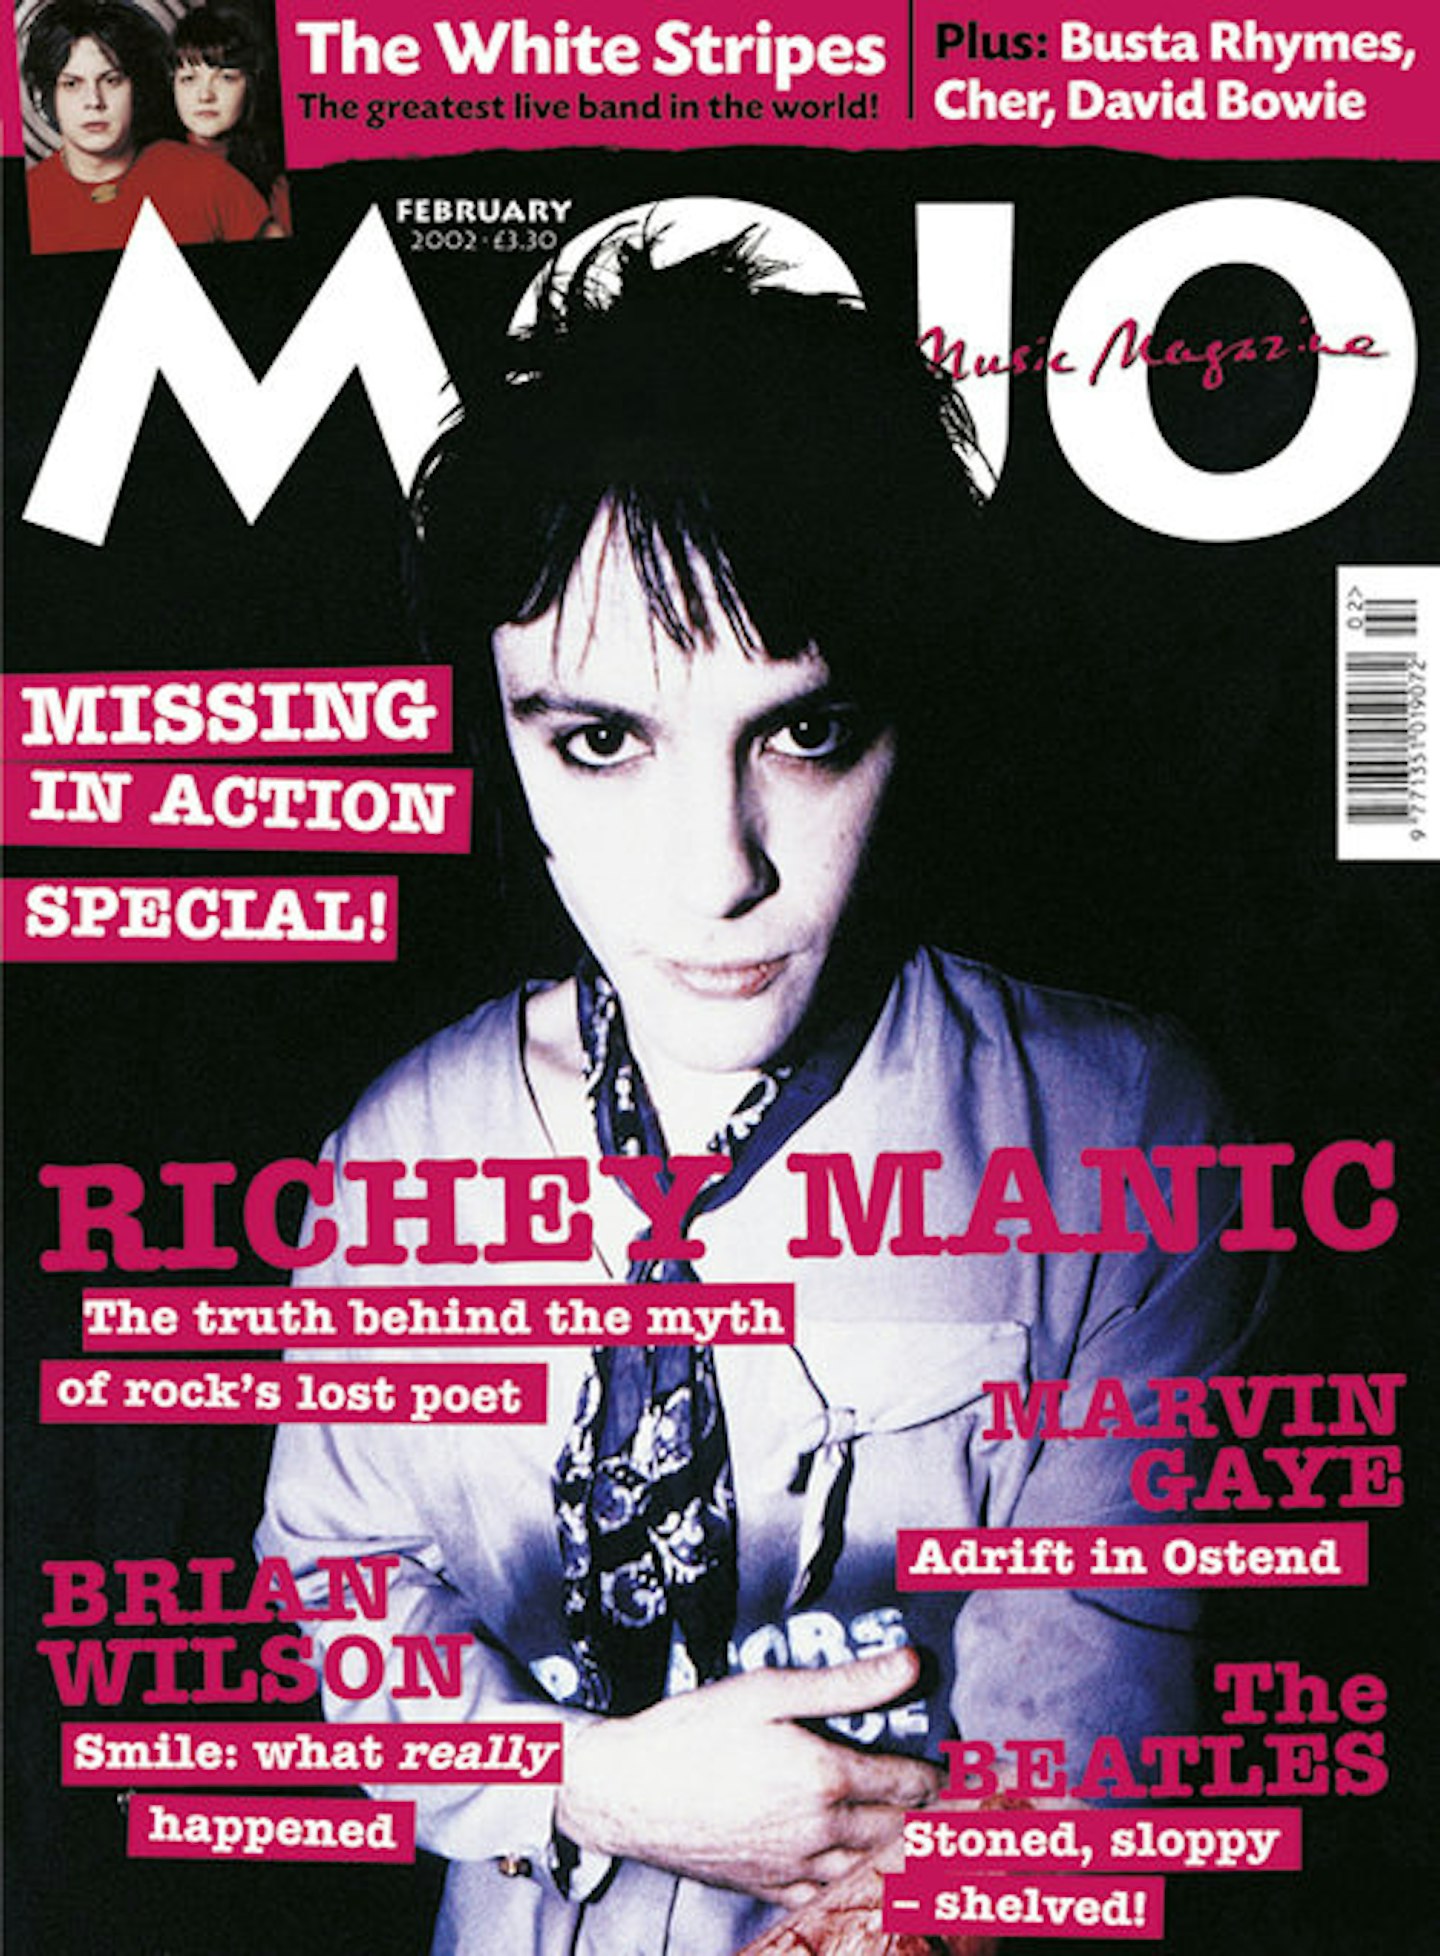 MOJO Issue 99 / February 2002